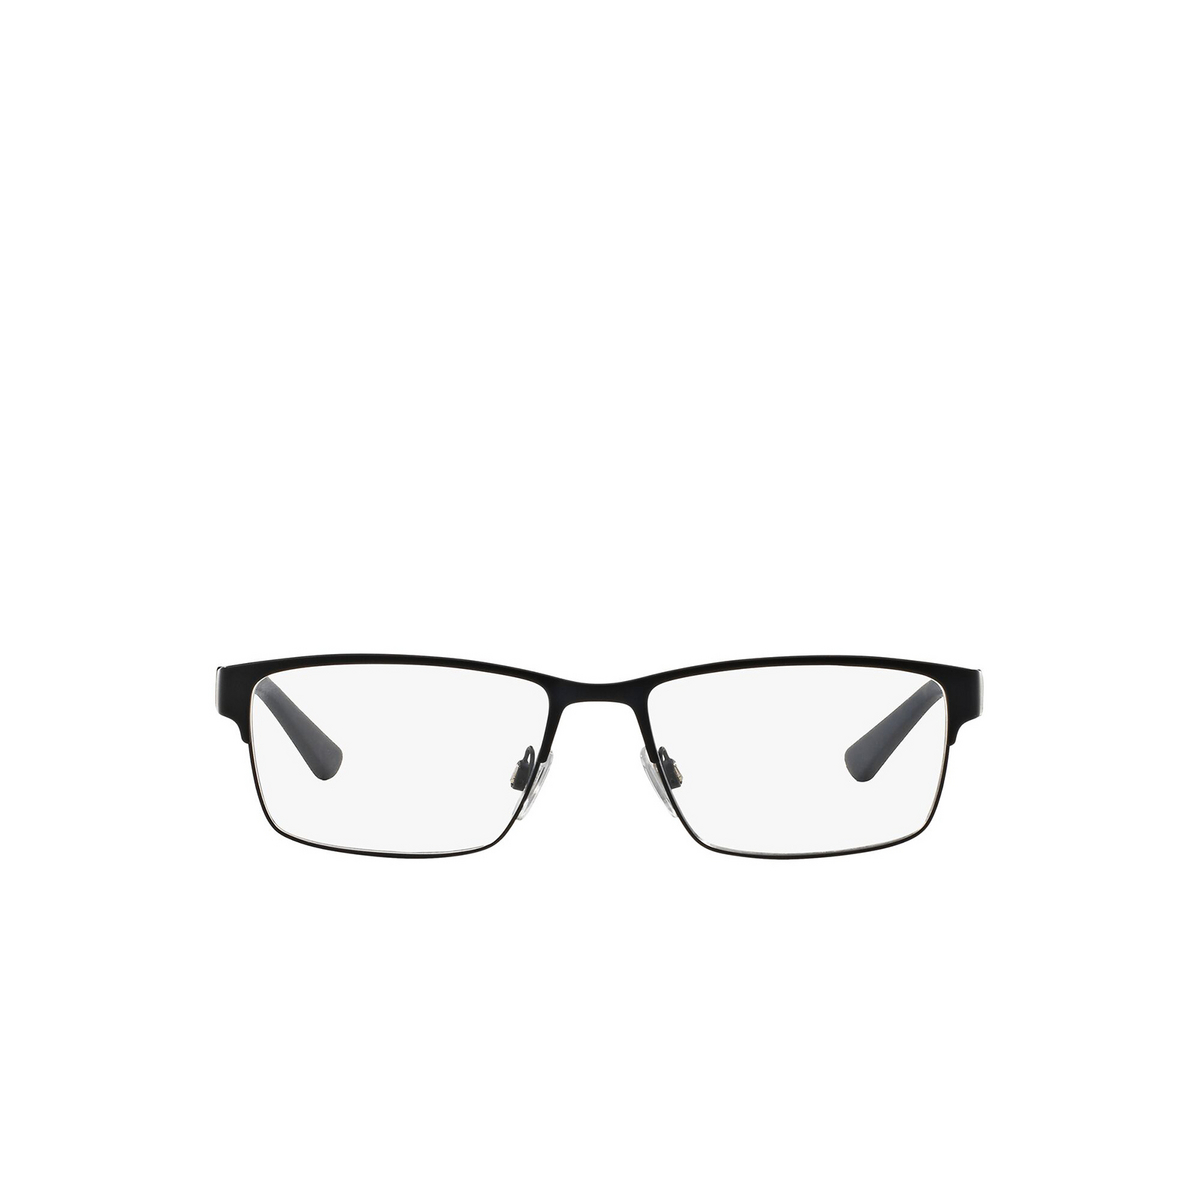 Polo Ralph Lauren® Rectangle Eyeglasses: PH1147 color Matte Navy Blue 9303 - front view.